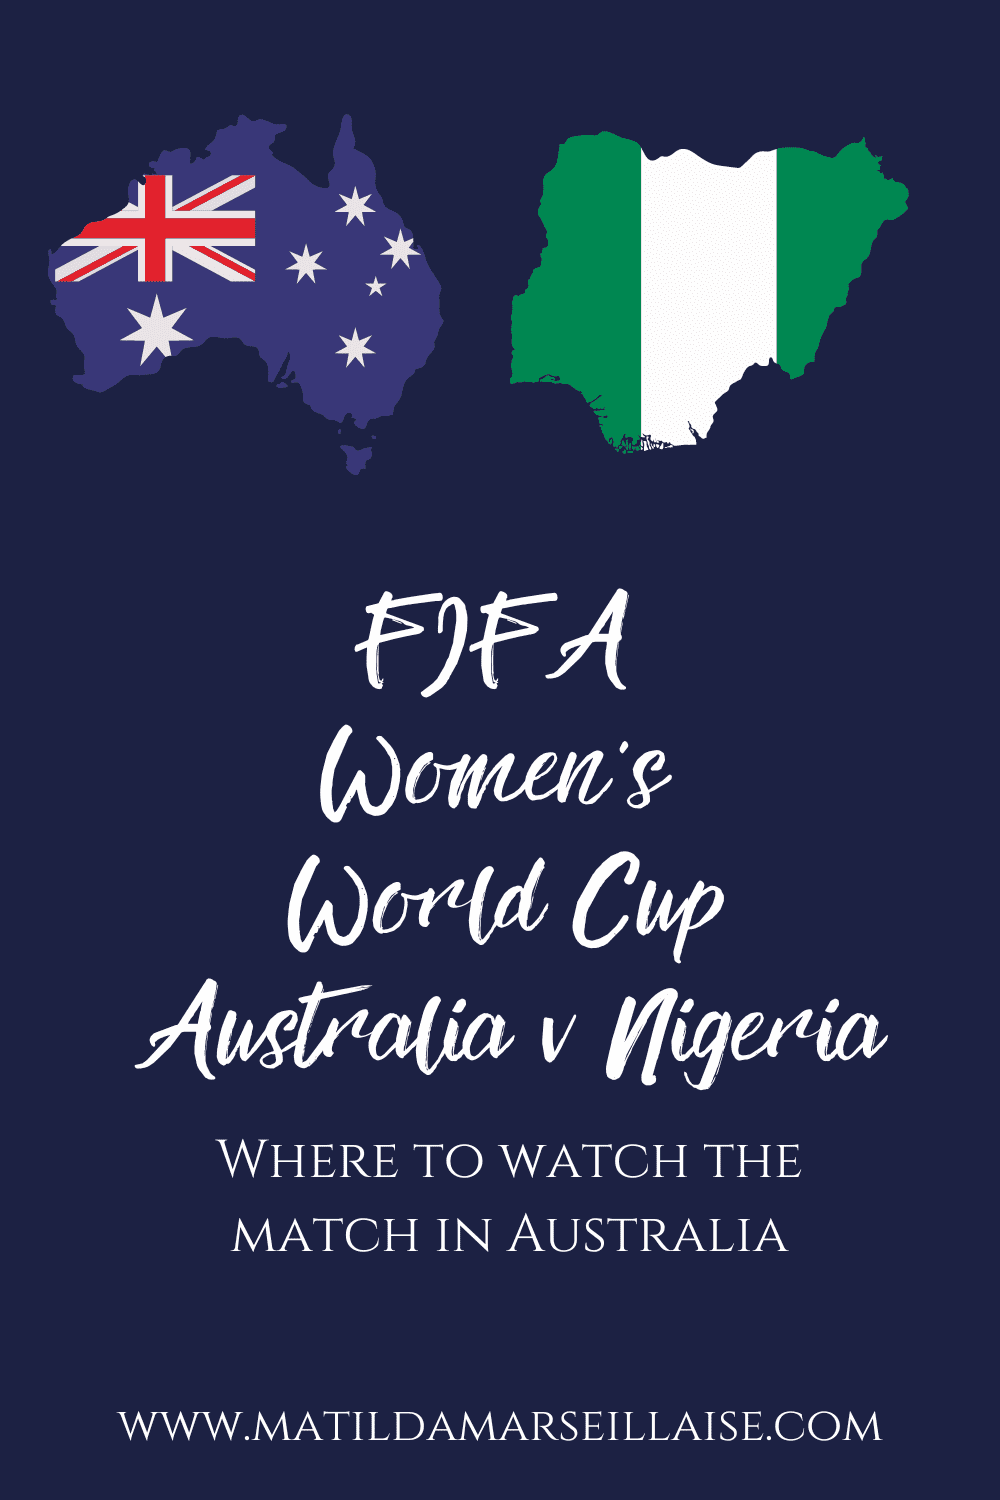 Australia v Nigeria in Australia